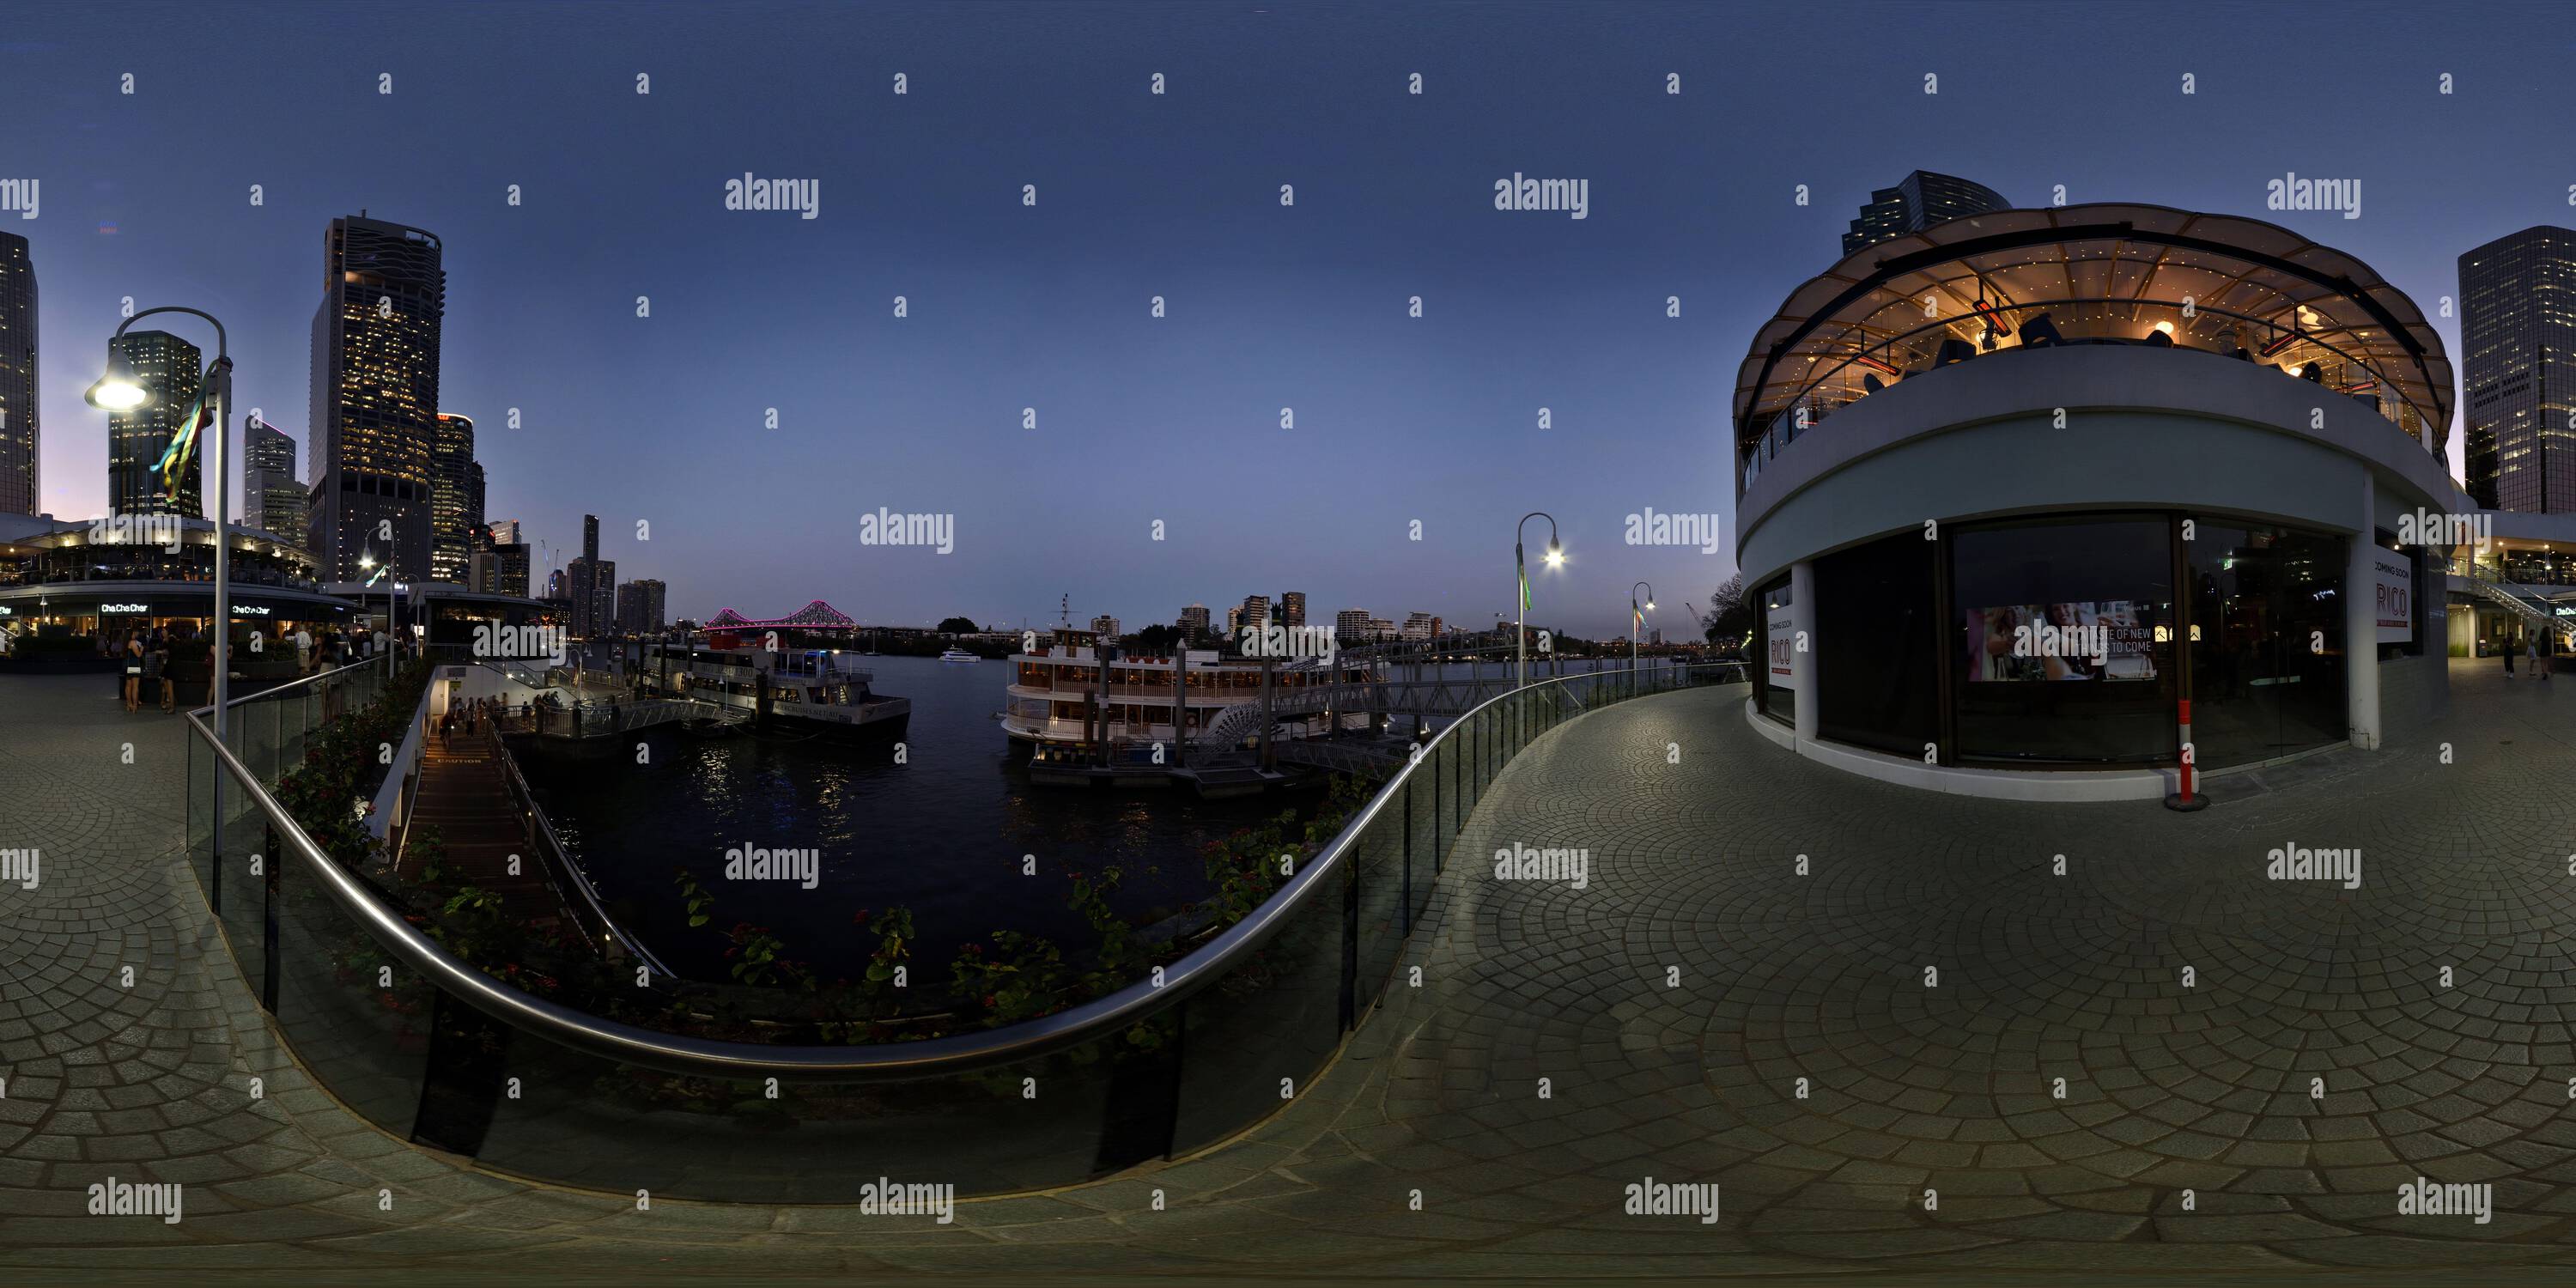 Vue panoramique à 360° de Panorama à 360° sur la rivière Brisbane, Eagle Street Pier Ferry terminal et restaurants au crépuscule, ciel nocturne de Brisbane Australie